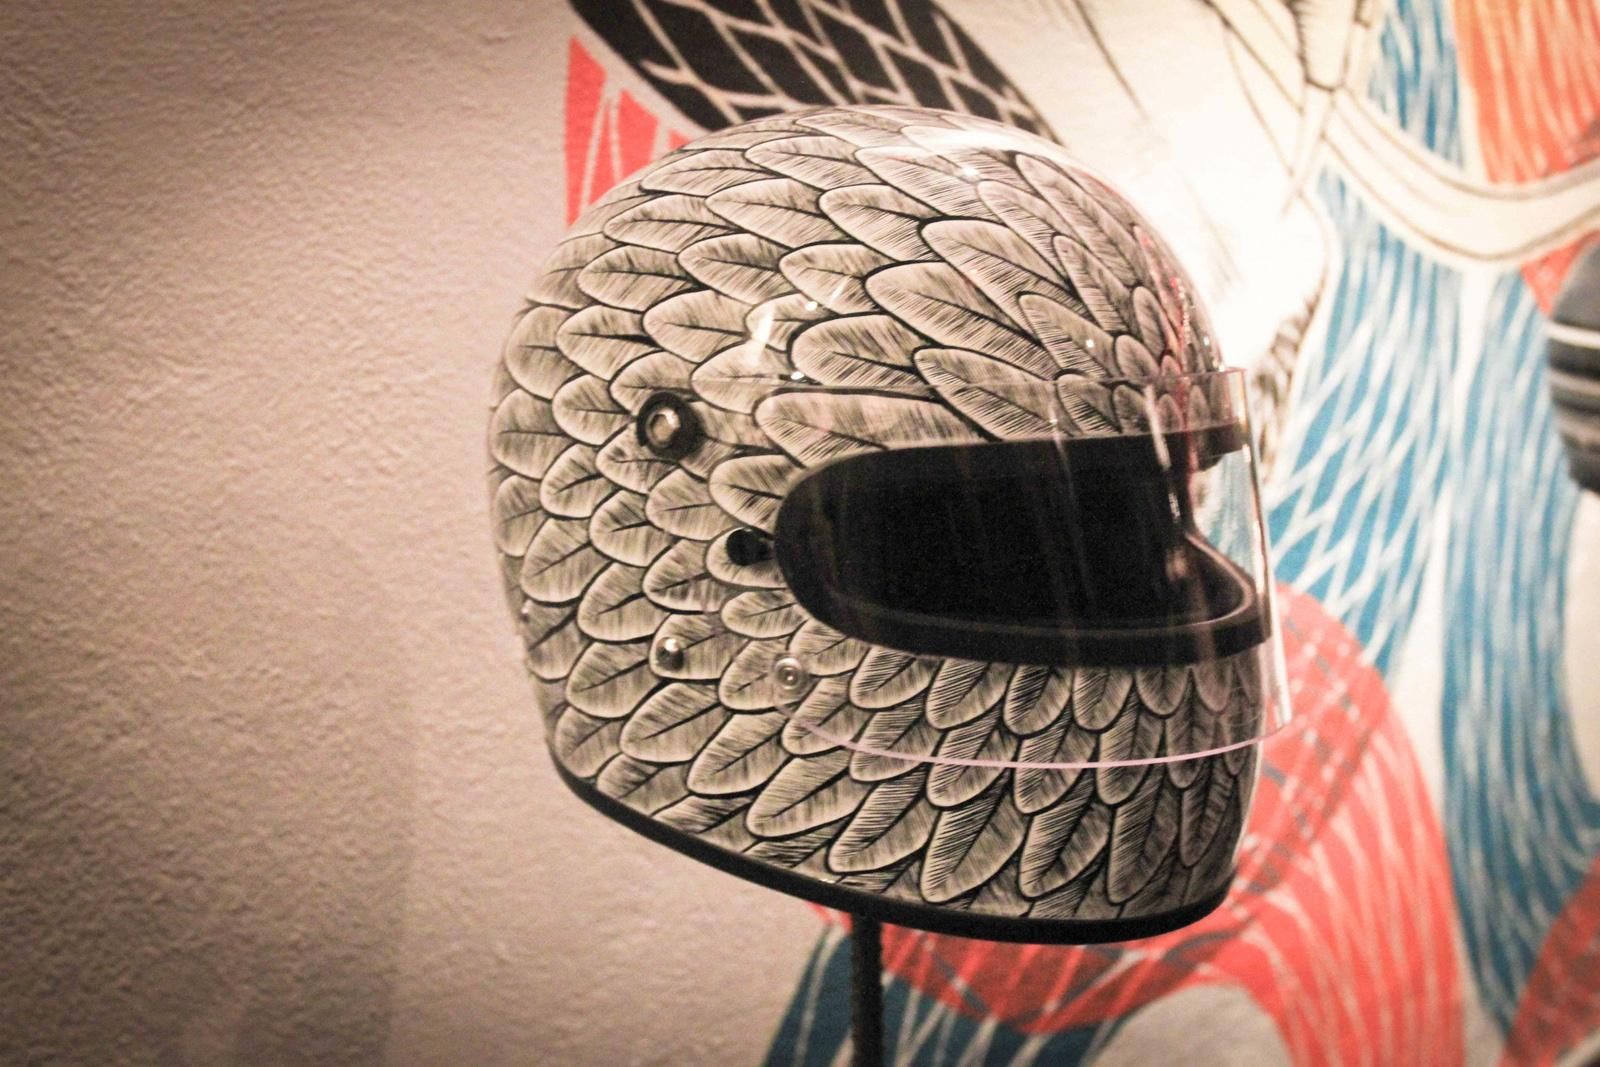 21 Helmets - One Motorcycle Show - Feather Helmet | Quickimage | EatSleepRIDE